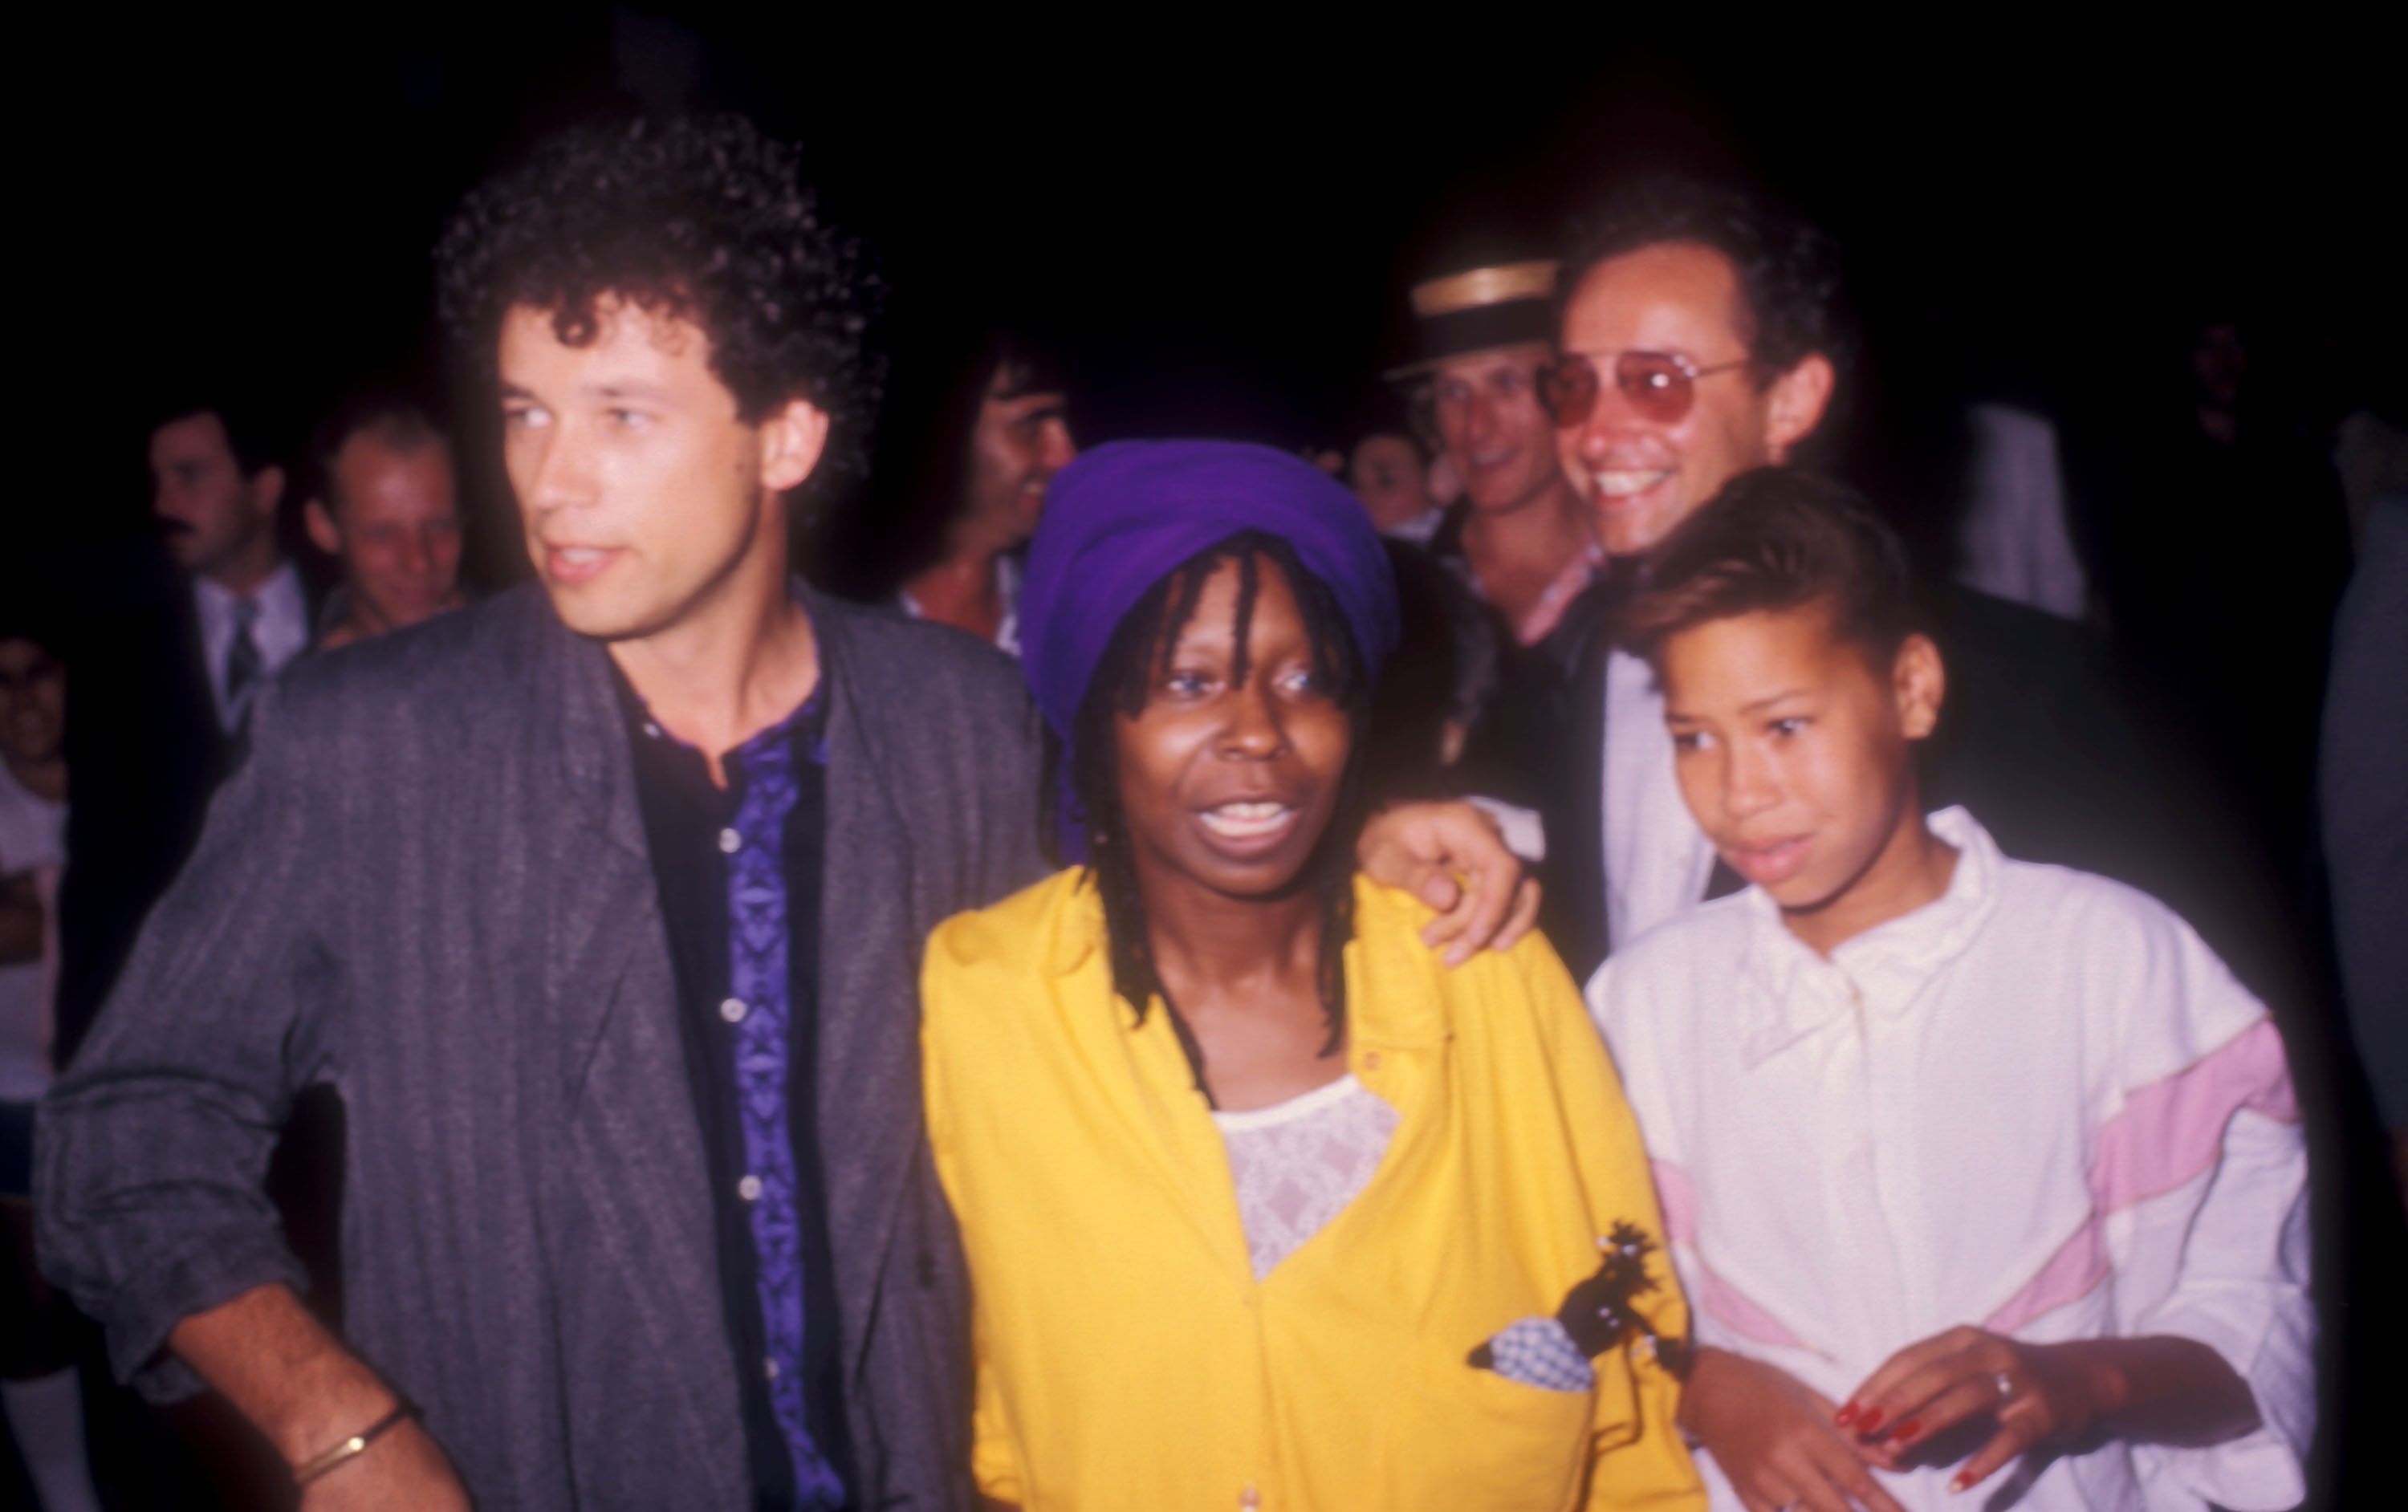 Whoopi Goldberg, sa fille et ses invités lors de la réception de mariage de Whoopi Goldberg - 1986 à Los Angeles, Californie, États-Unis. | Source : Getty Images